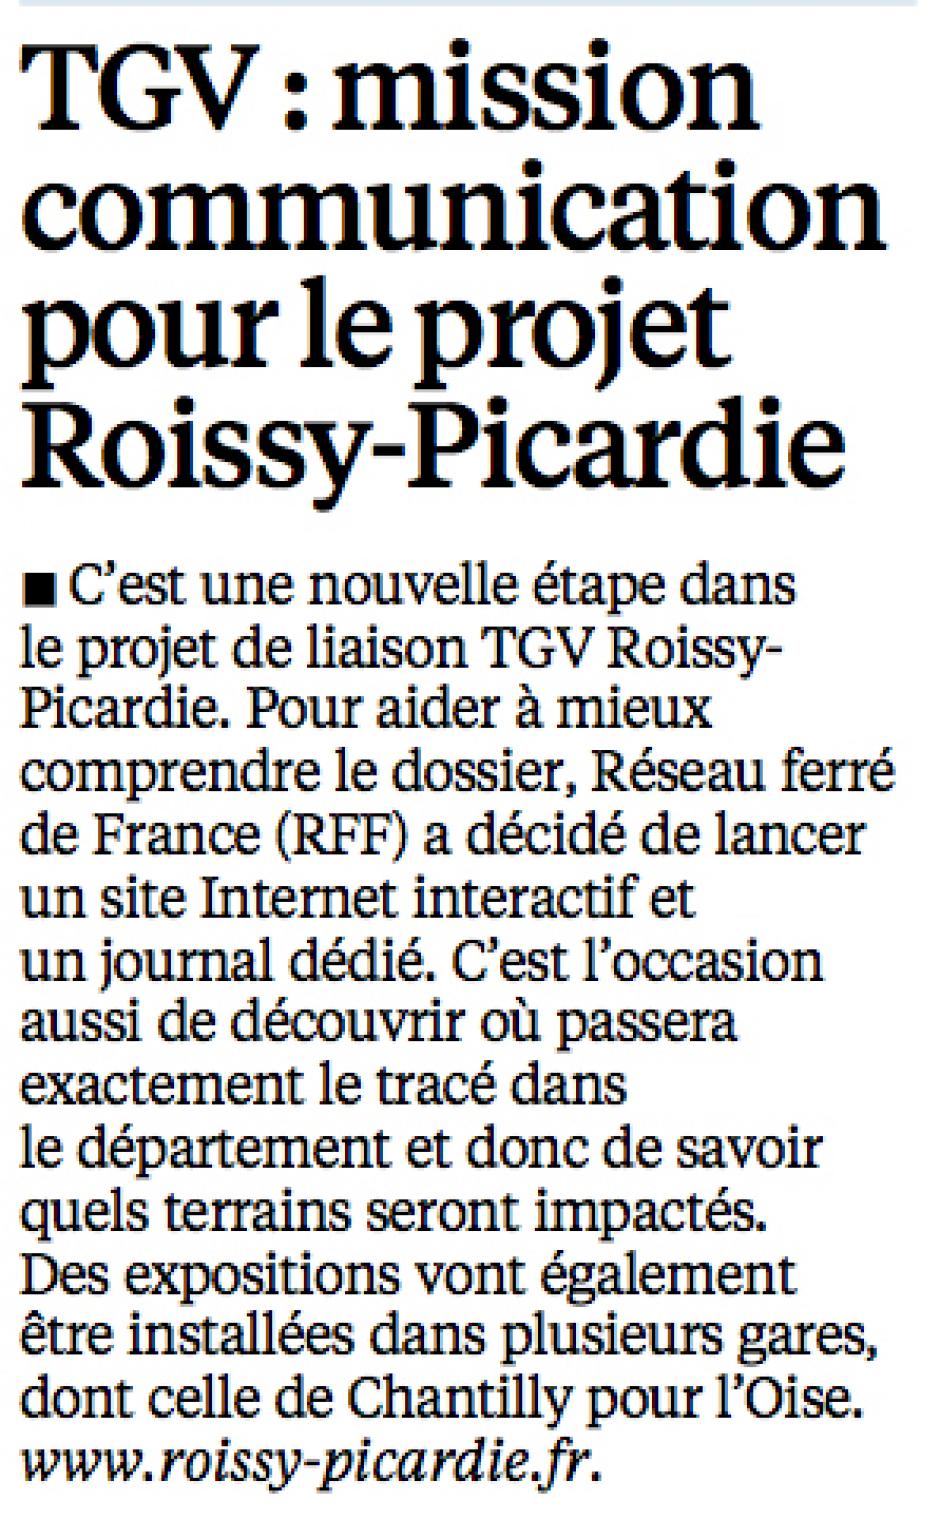 20140906-LeP-Oise-TGV : mission communication pour le projet Roissy-Picardie